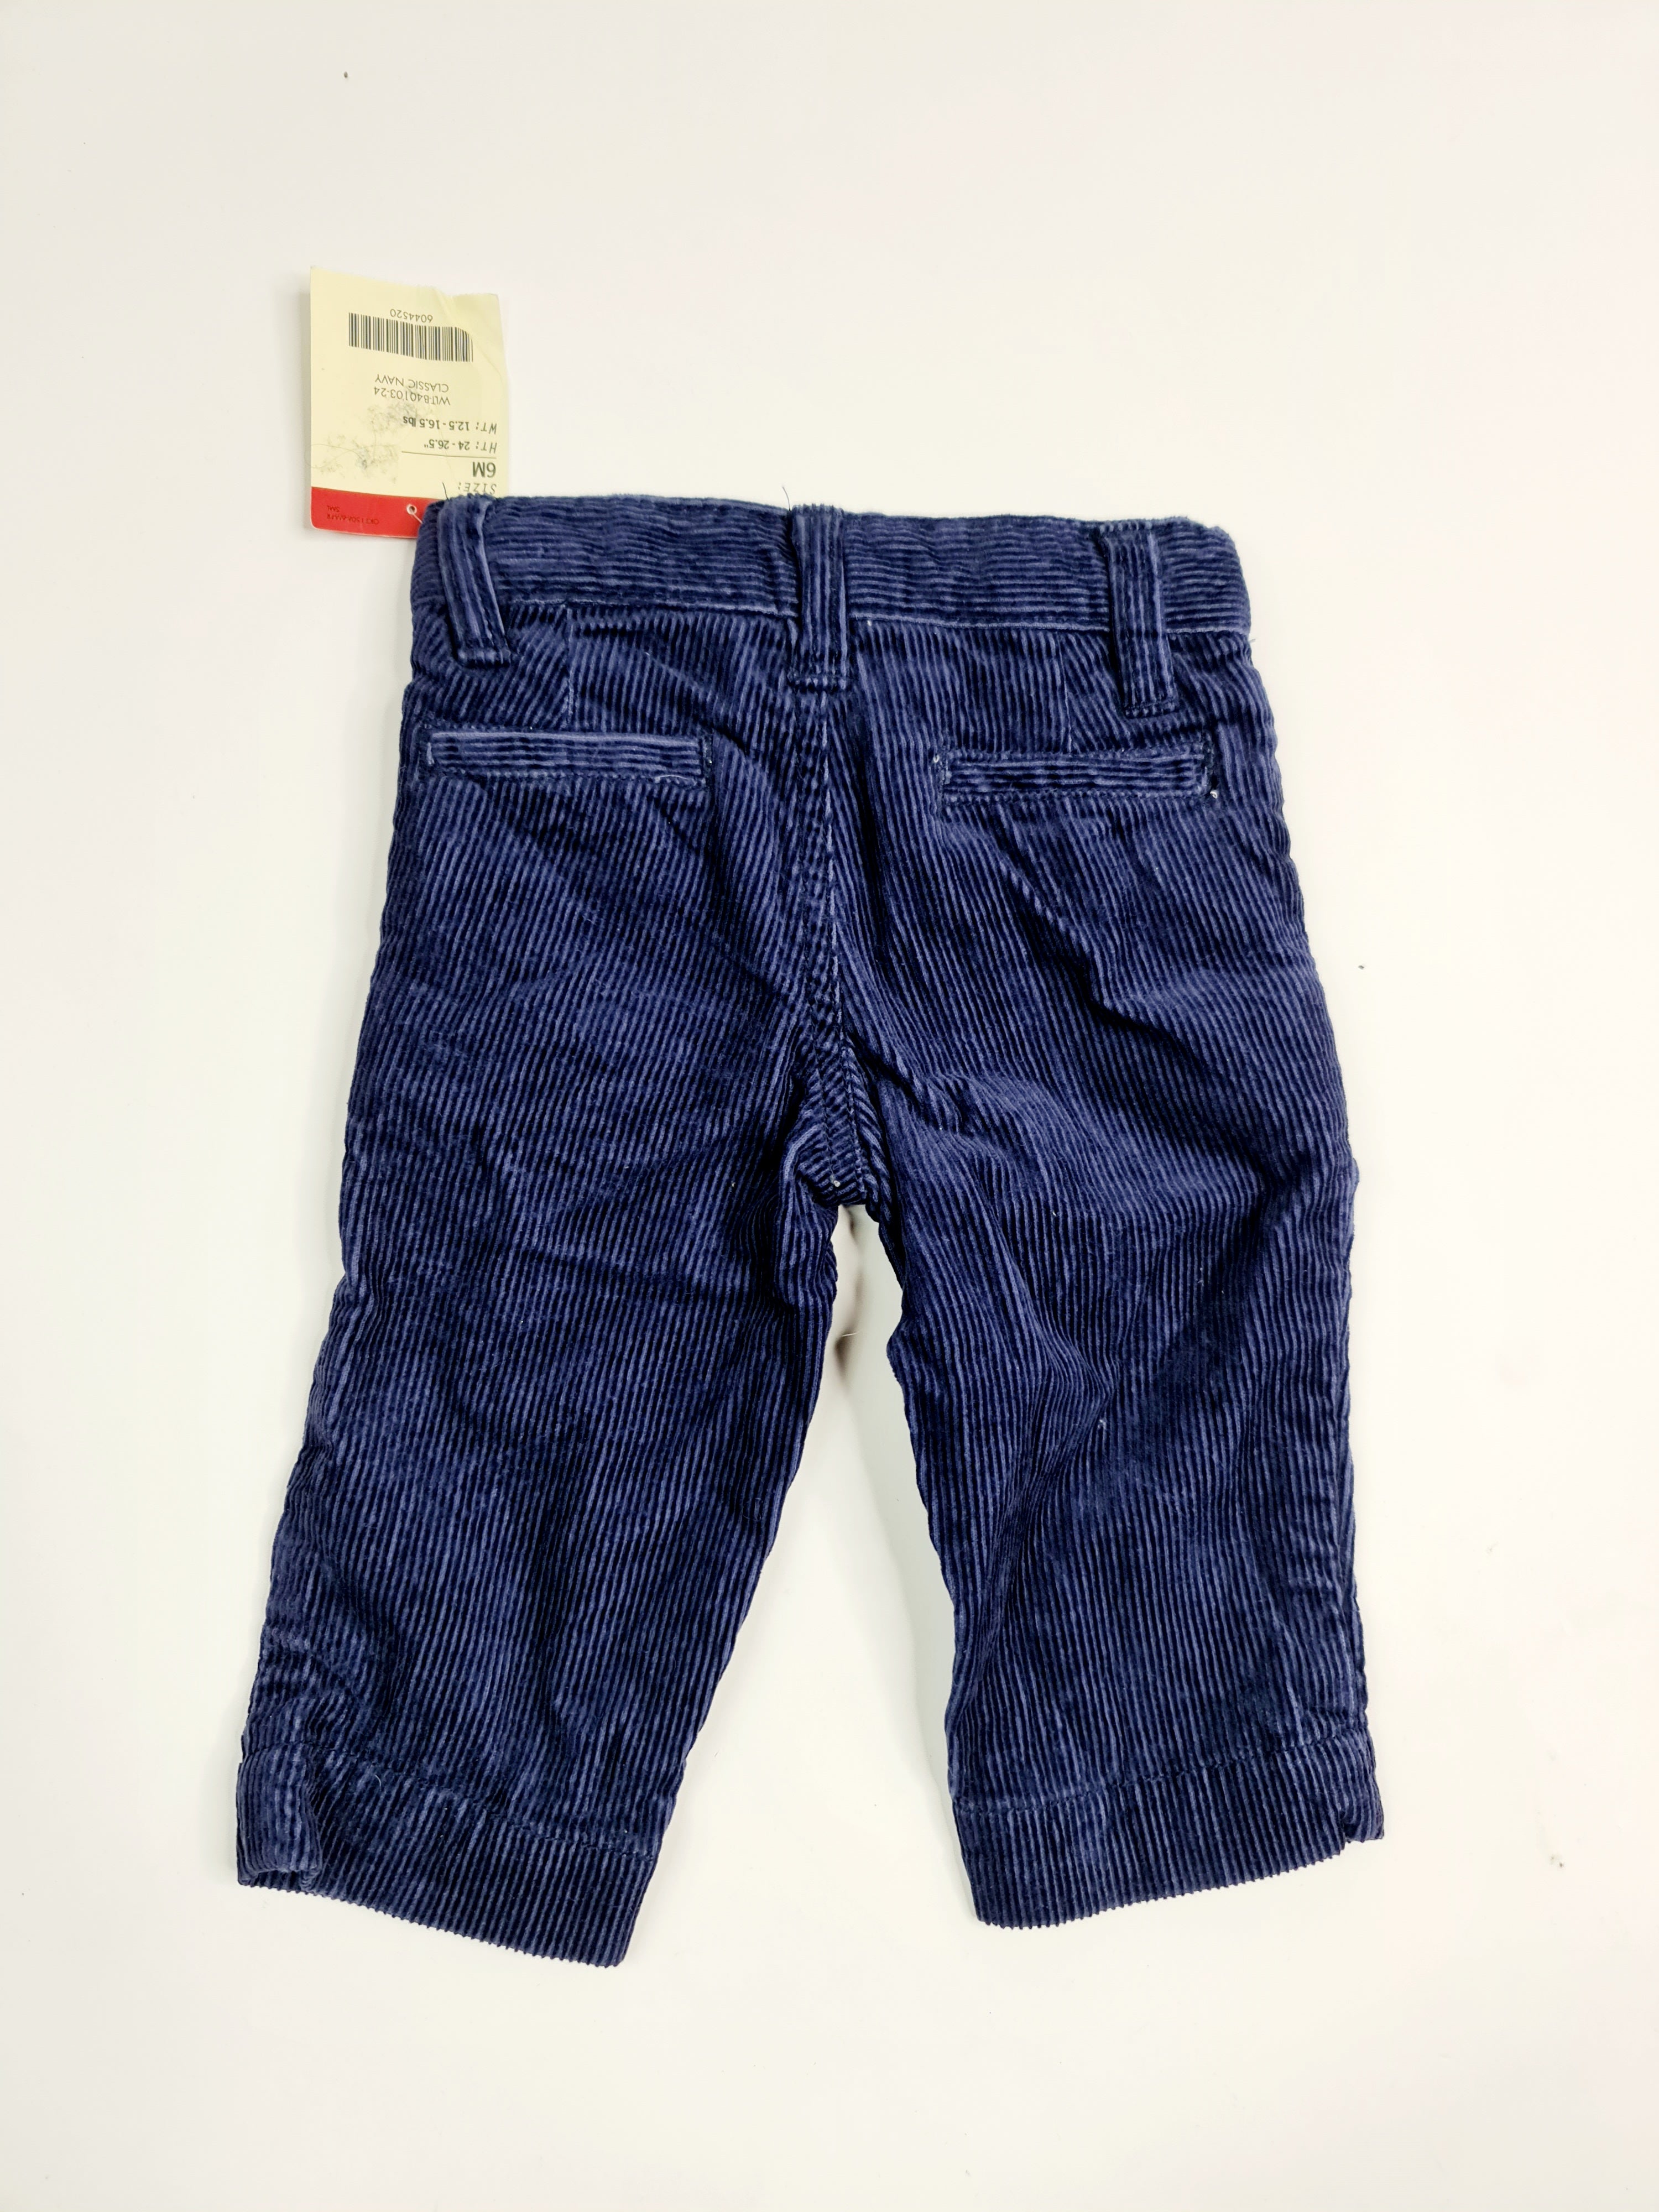 Pantalones de mezclilla azul oscuro marca OshKosh, para bebé de 6 meses.